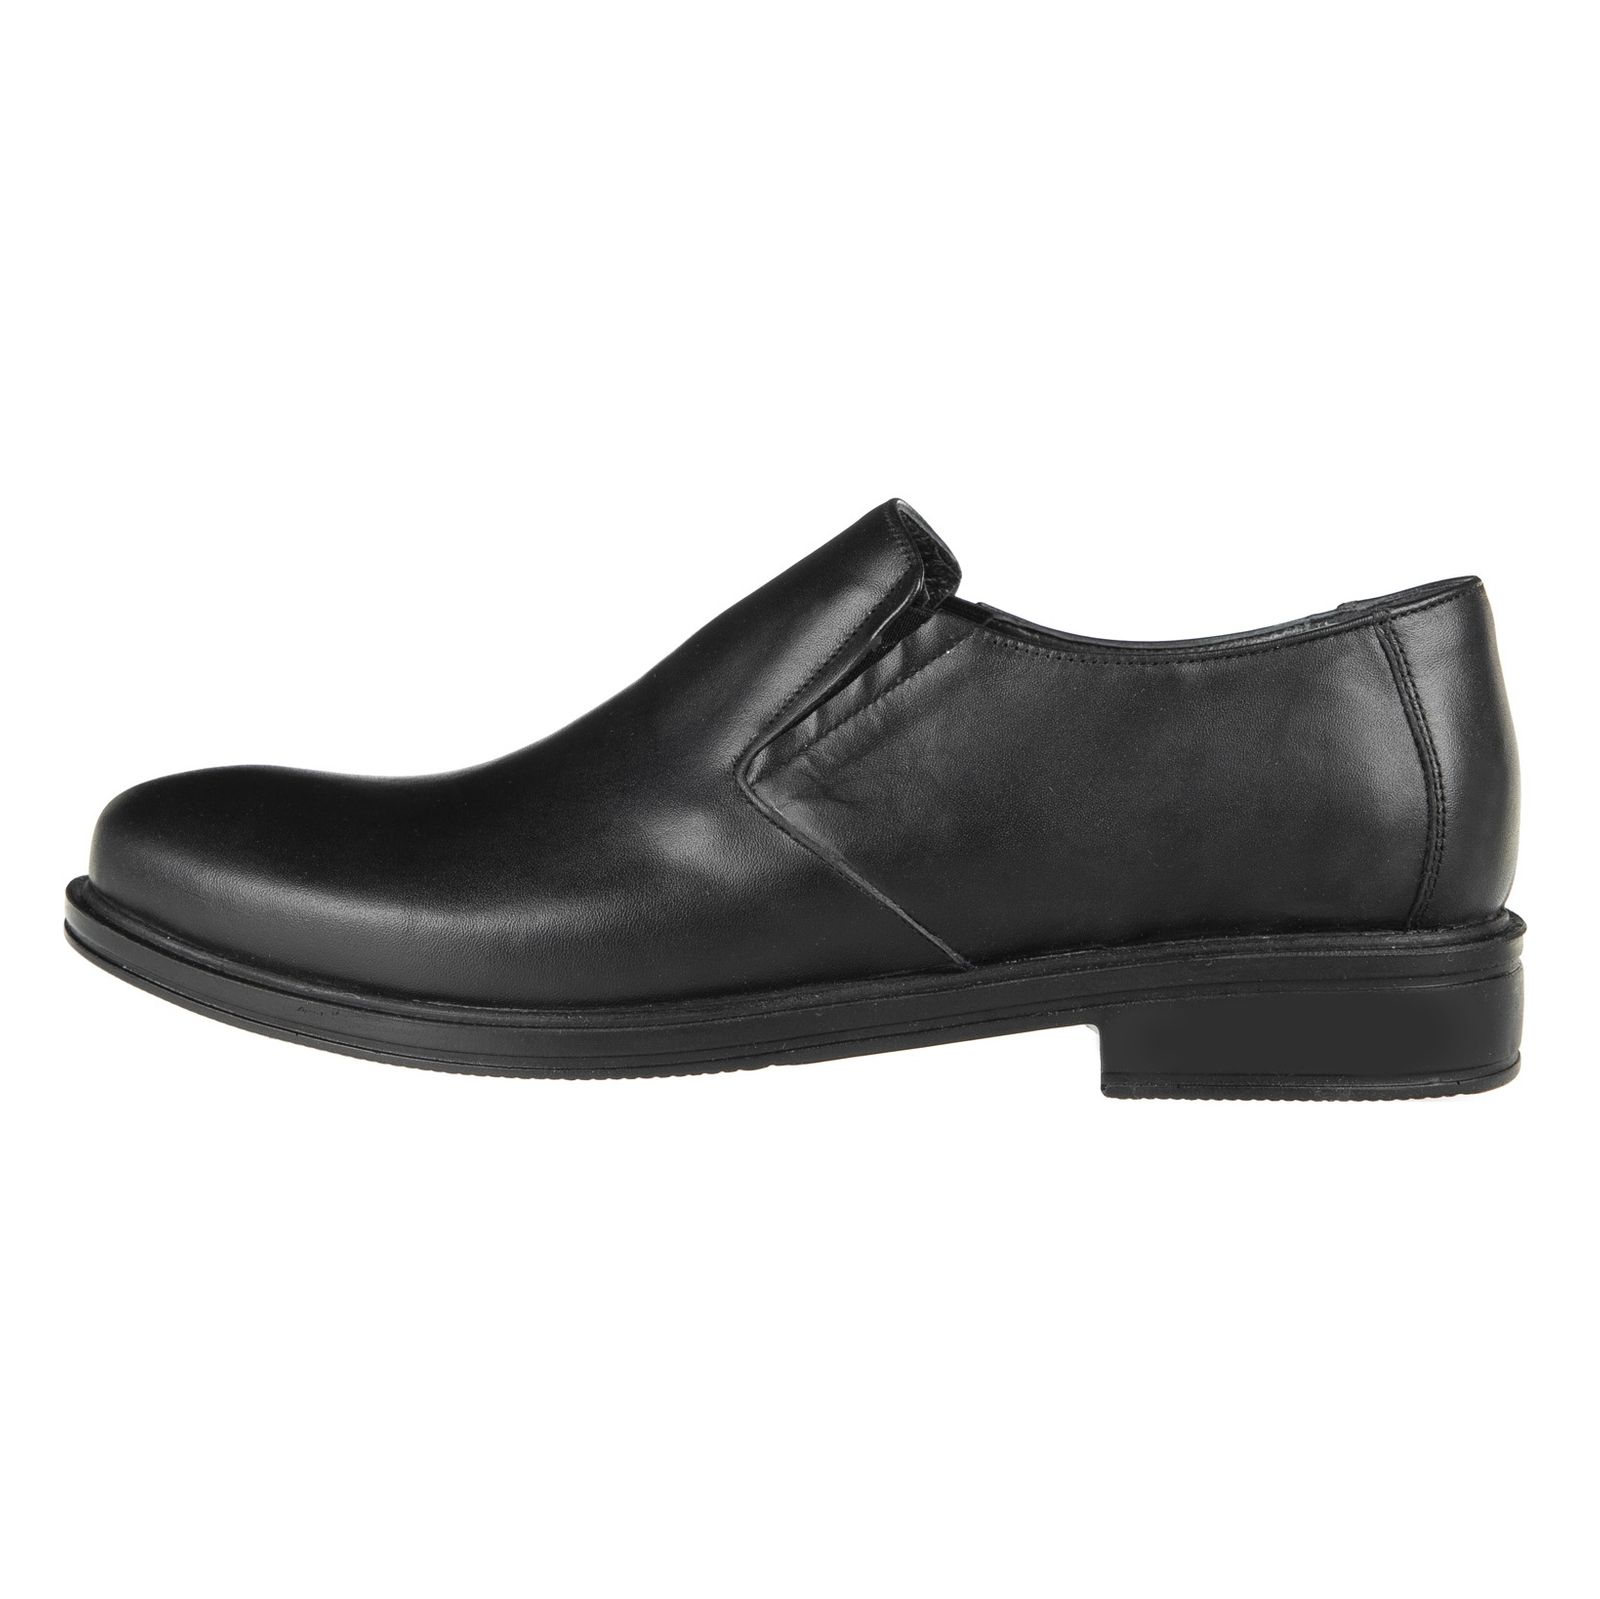 کفش مردانه دلفارد مدل 7161B503-101 - مشکی - 2